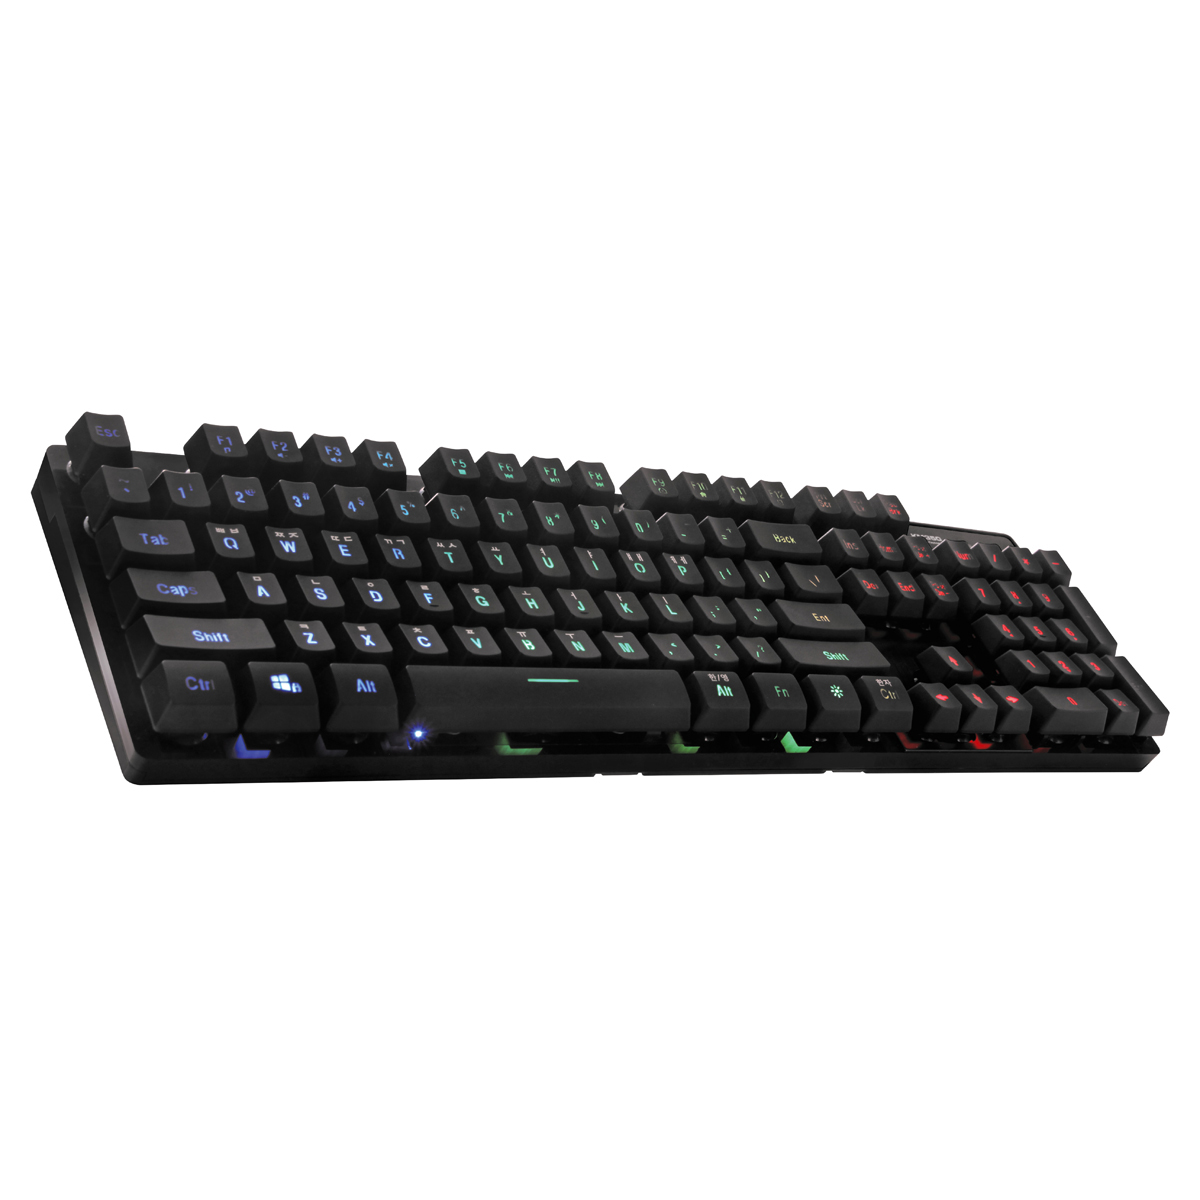 VARR Gaming set, keyboard: cherry R1-R4, mouse 3200dpi PIXART, muismat zwart met VARR logo